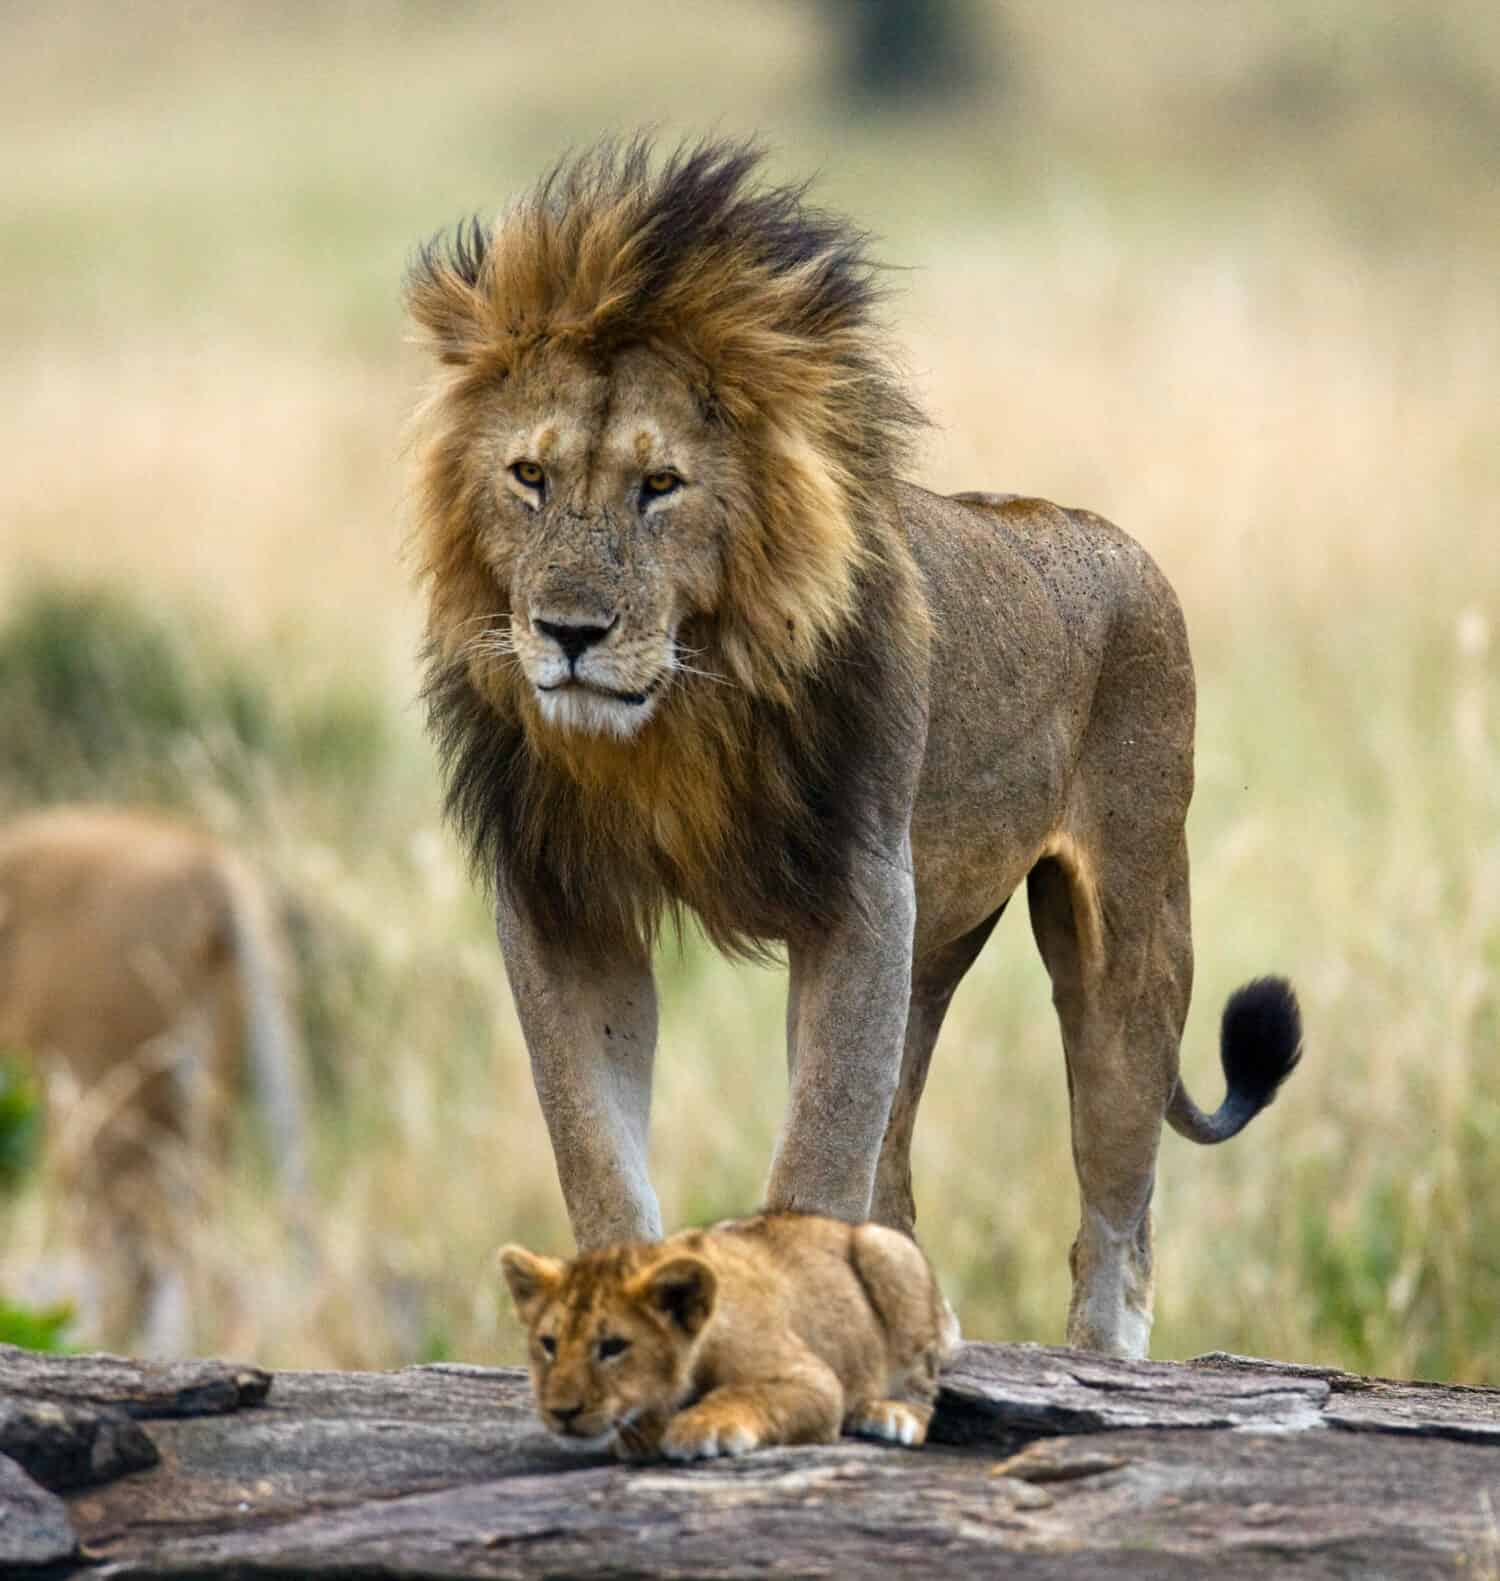 Grande leone maschio con cucciolo.  Parco Nazionale.  Kenia.  Tanzania.  Masai Mara.  Serengeti.  Un'eccellente illustrazione.